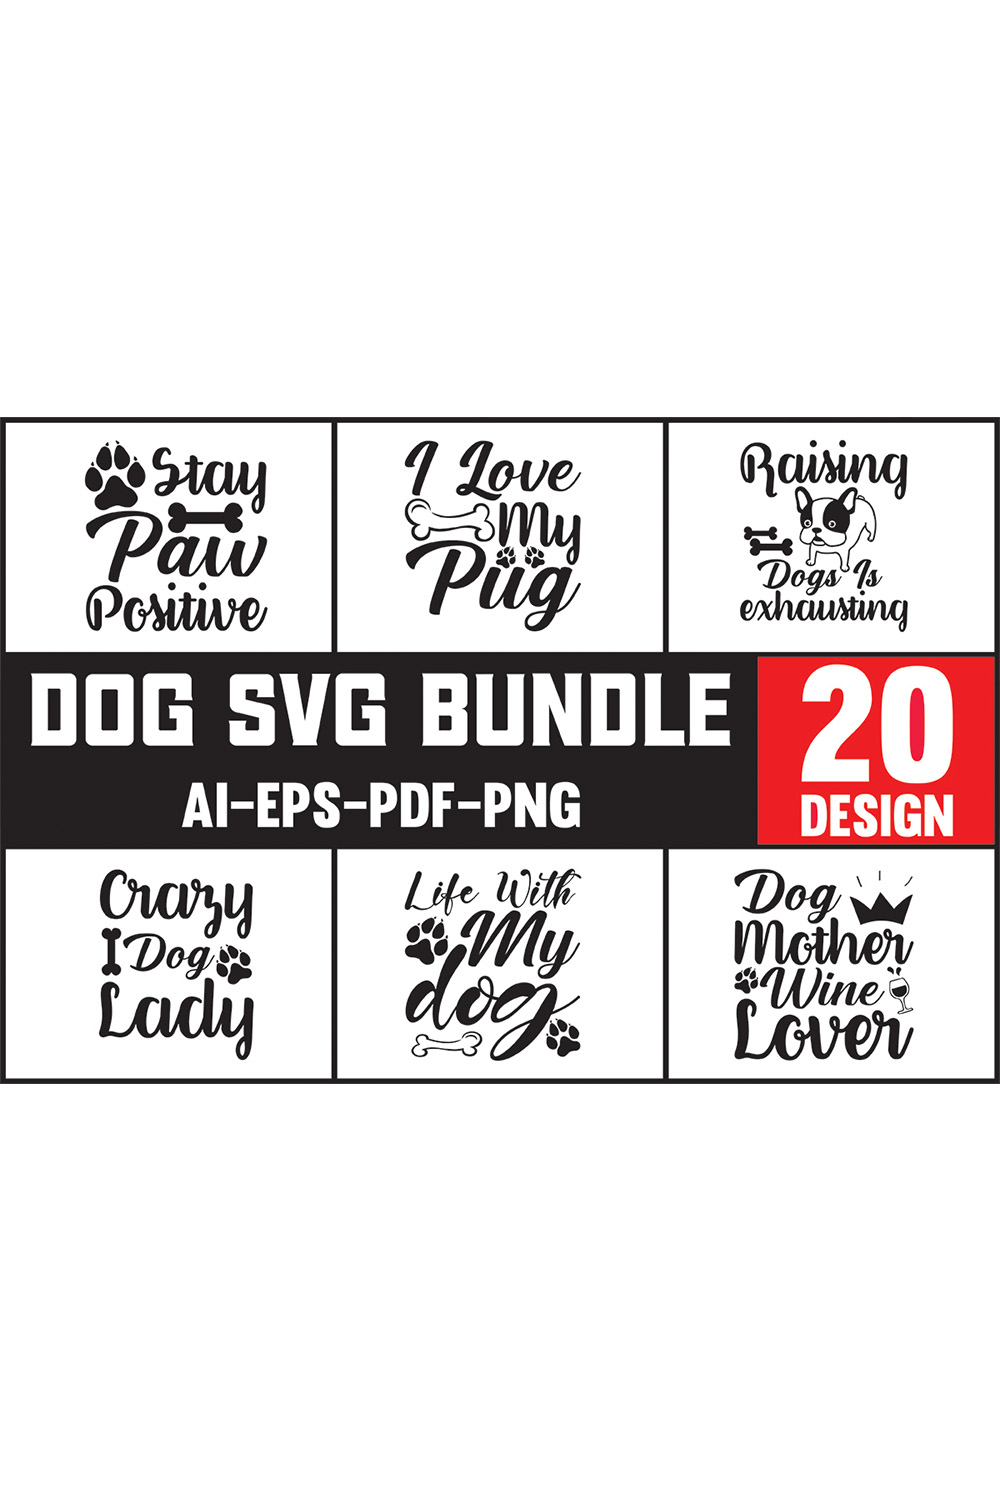 Dog svg bundle with 20 designs.